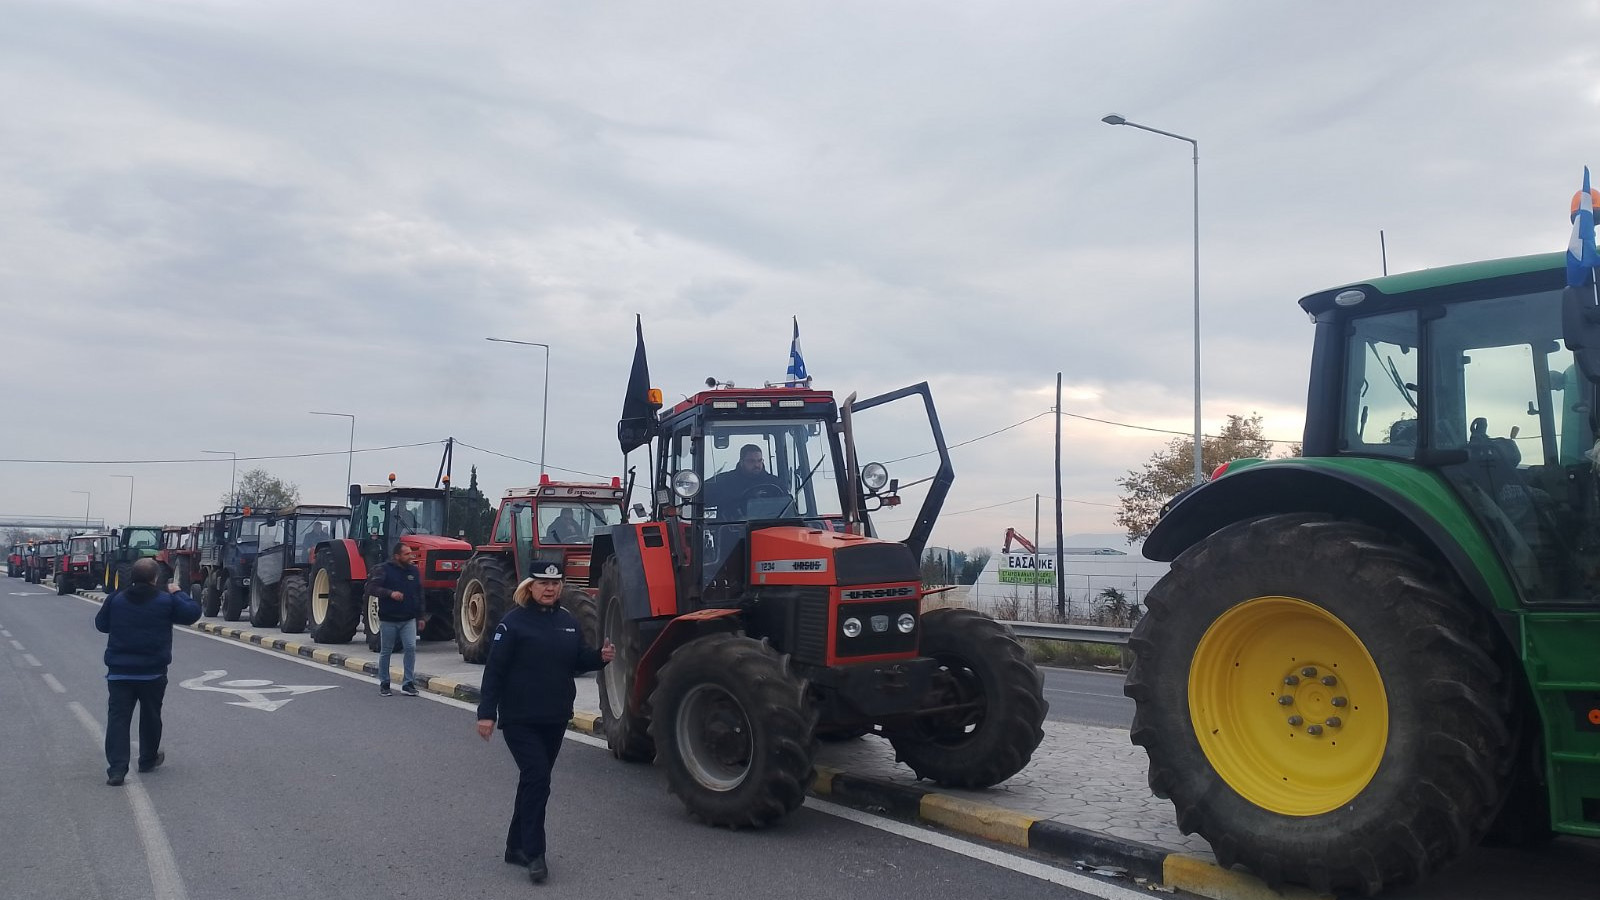 Ξεκινούν οι κινητοποιήσεις των Θεσσαλών αγροτών - Τρακτέρ σε Λάρισα, Καρδίτσα, Βόλο 